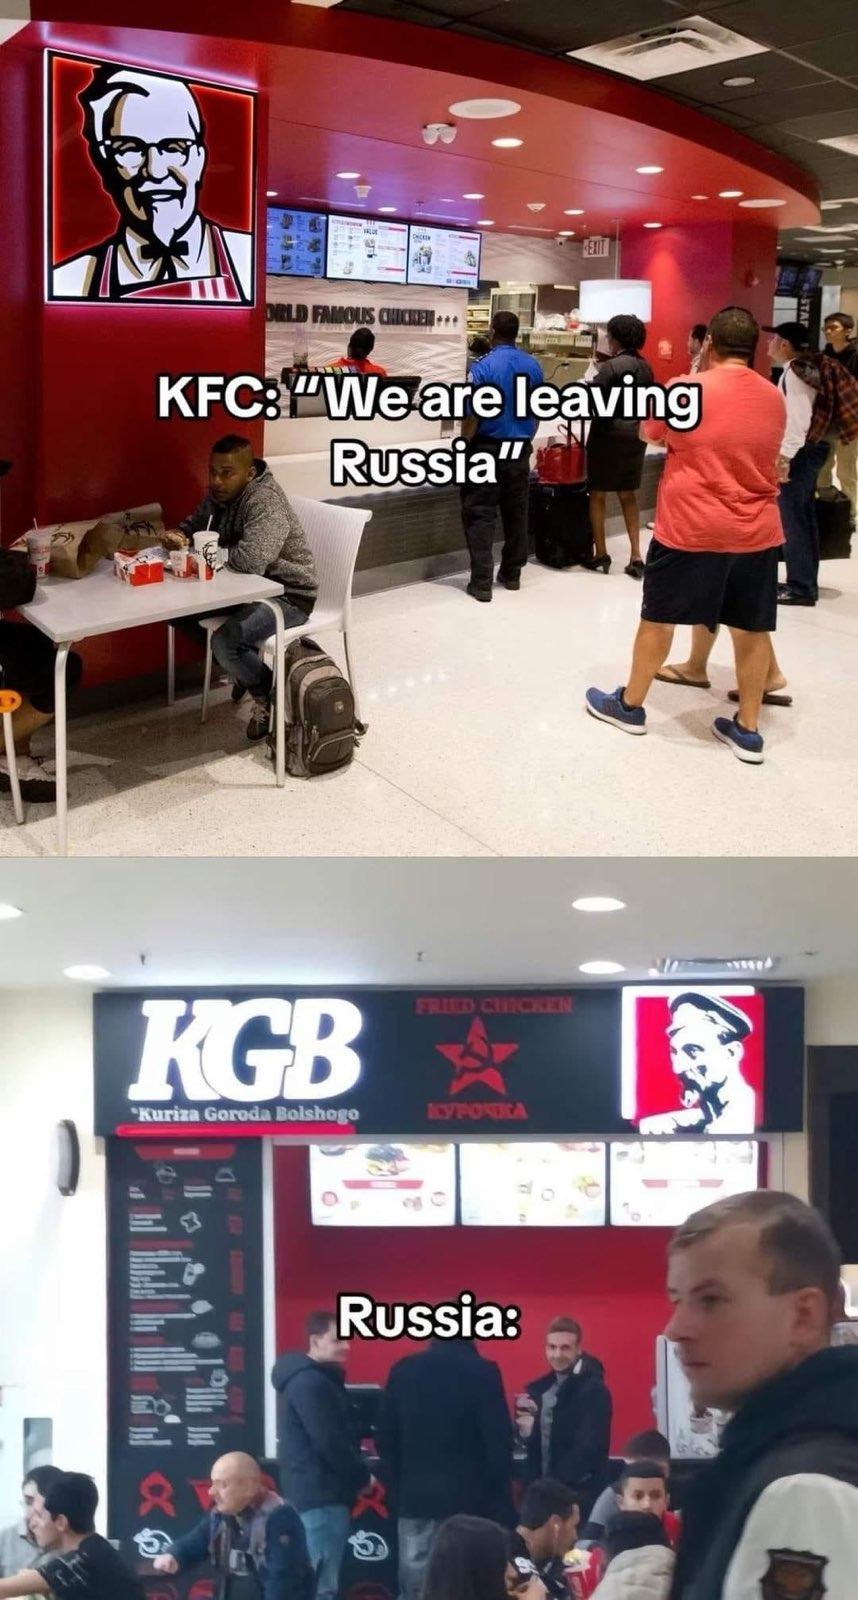 Obrázek KFC KGB